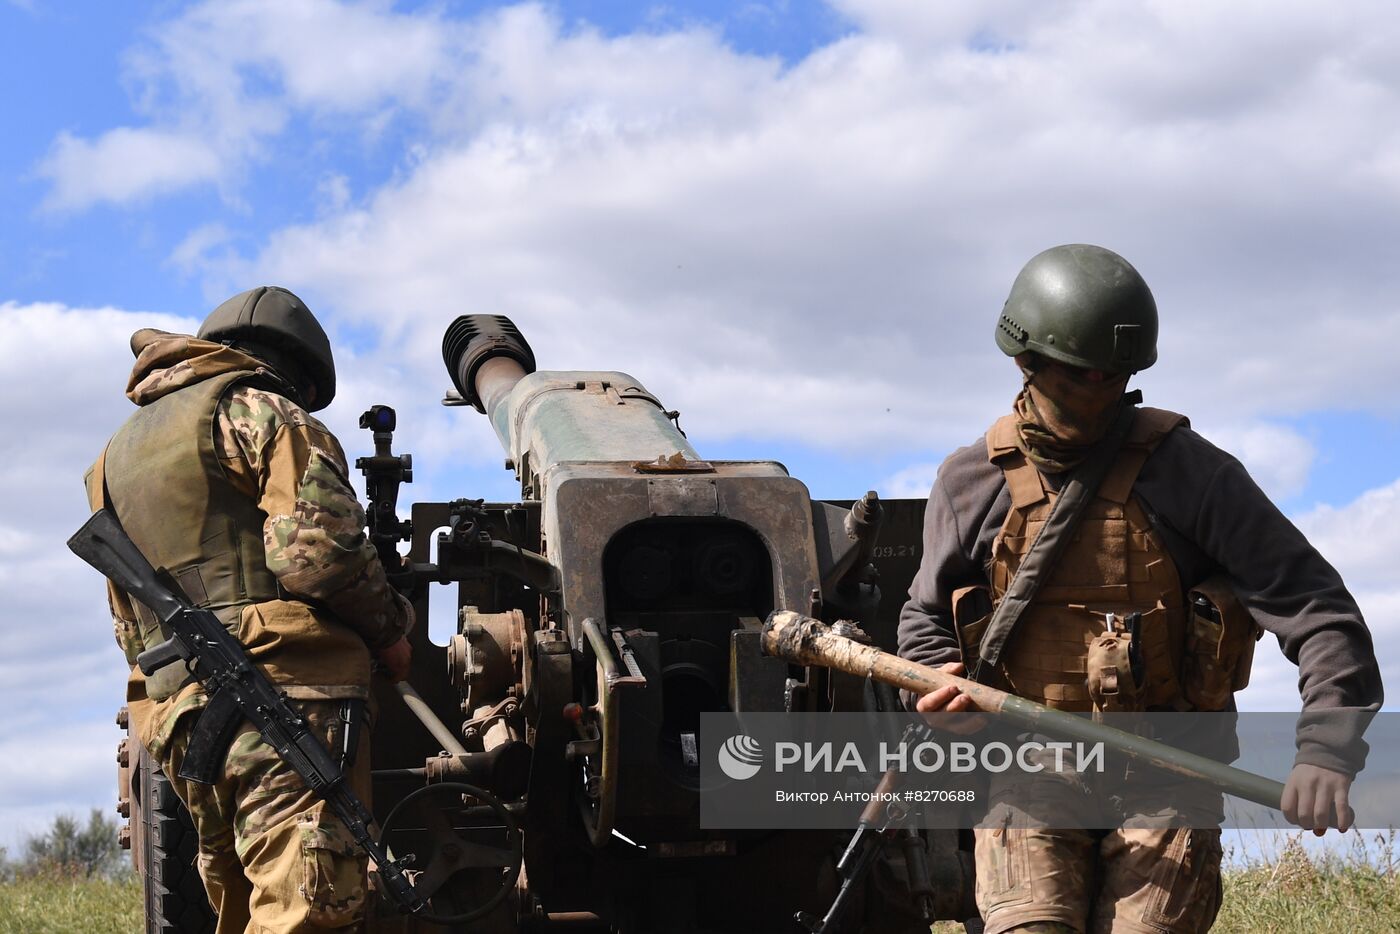 Работа артиллерийского расчета ЧВК "Вагнер" под Бахмутом в ДНР